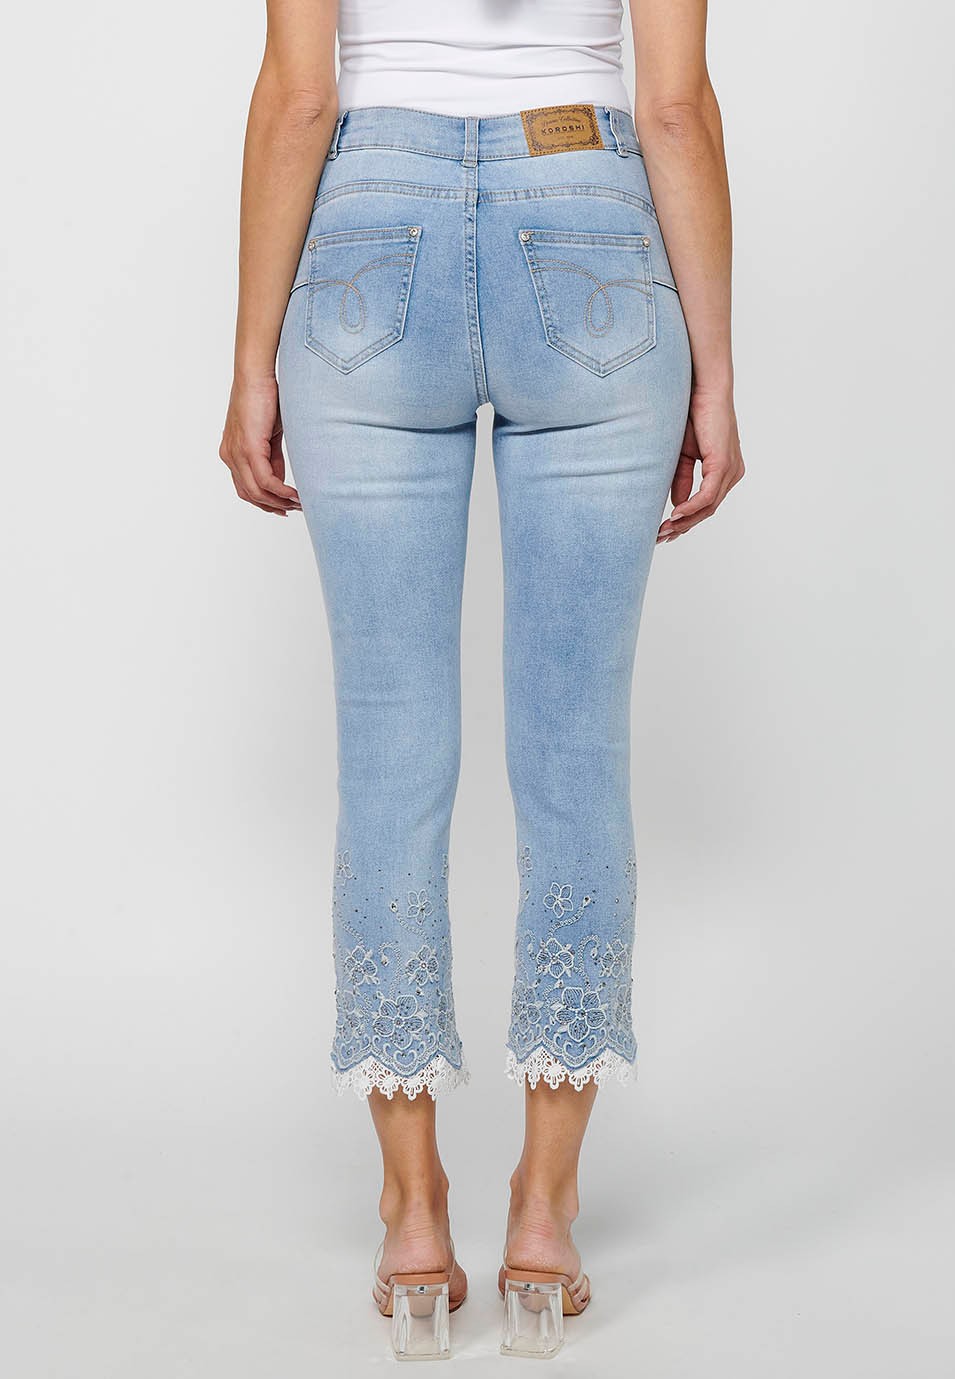 Pantalon long en jean slim avec fermeture éclair sur le devant et détails brodés de fleurs bleu clair pour femme 2